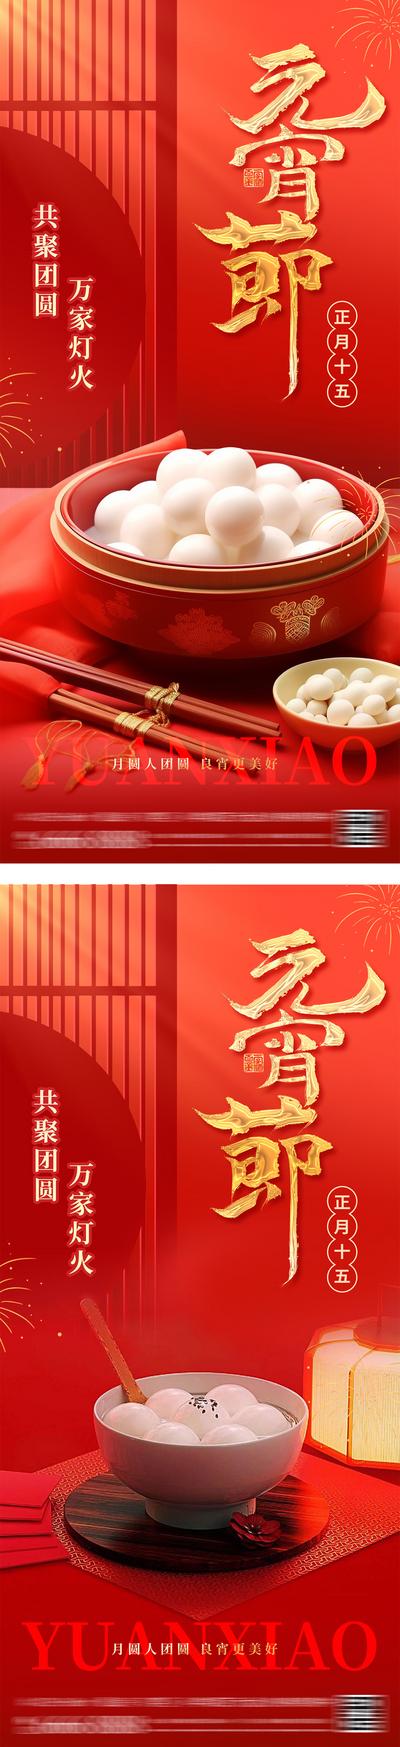 南门网 广告 海报 中国传统节日 元宵节 新年 小年 正月十五 汤圆 团圆 平安 喜乐 年俗 贺岁